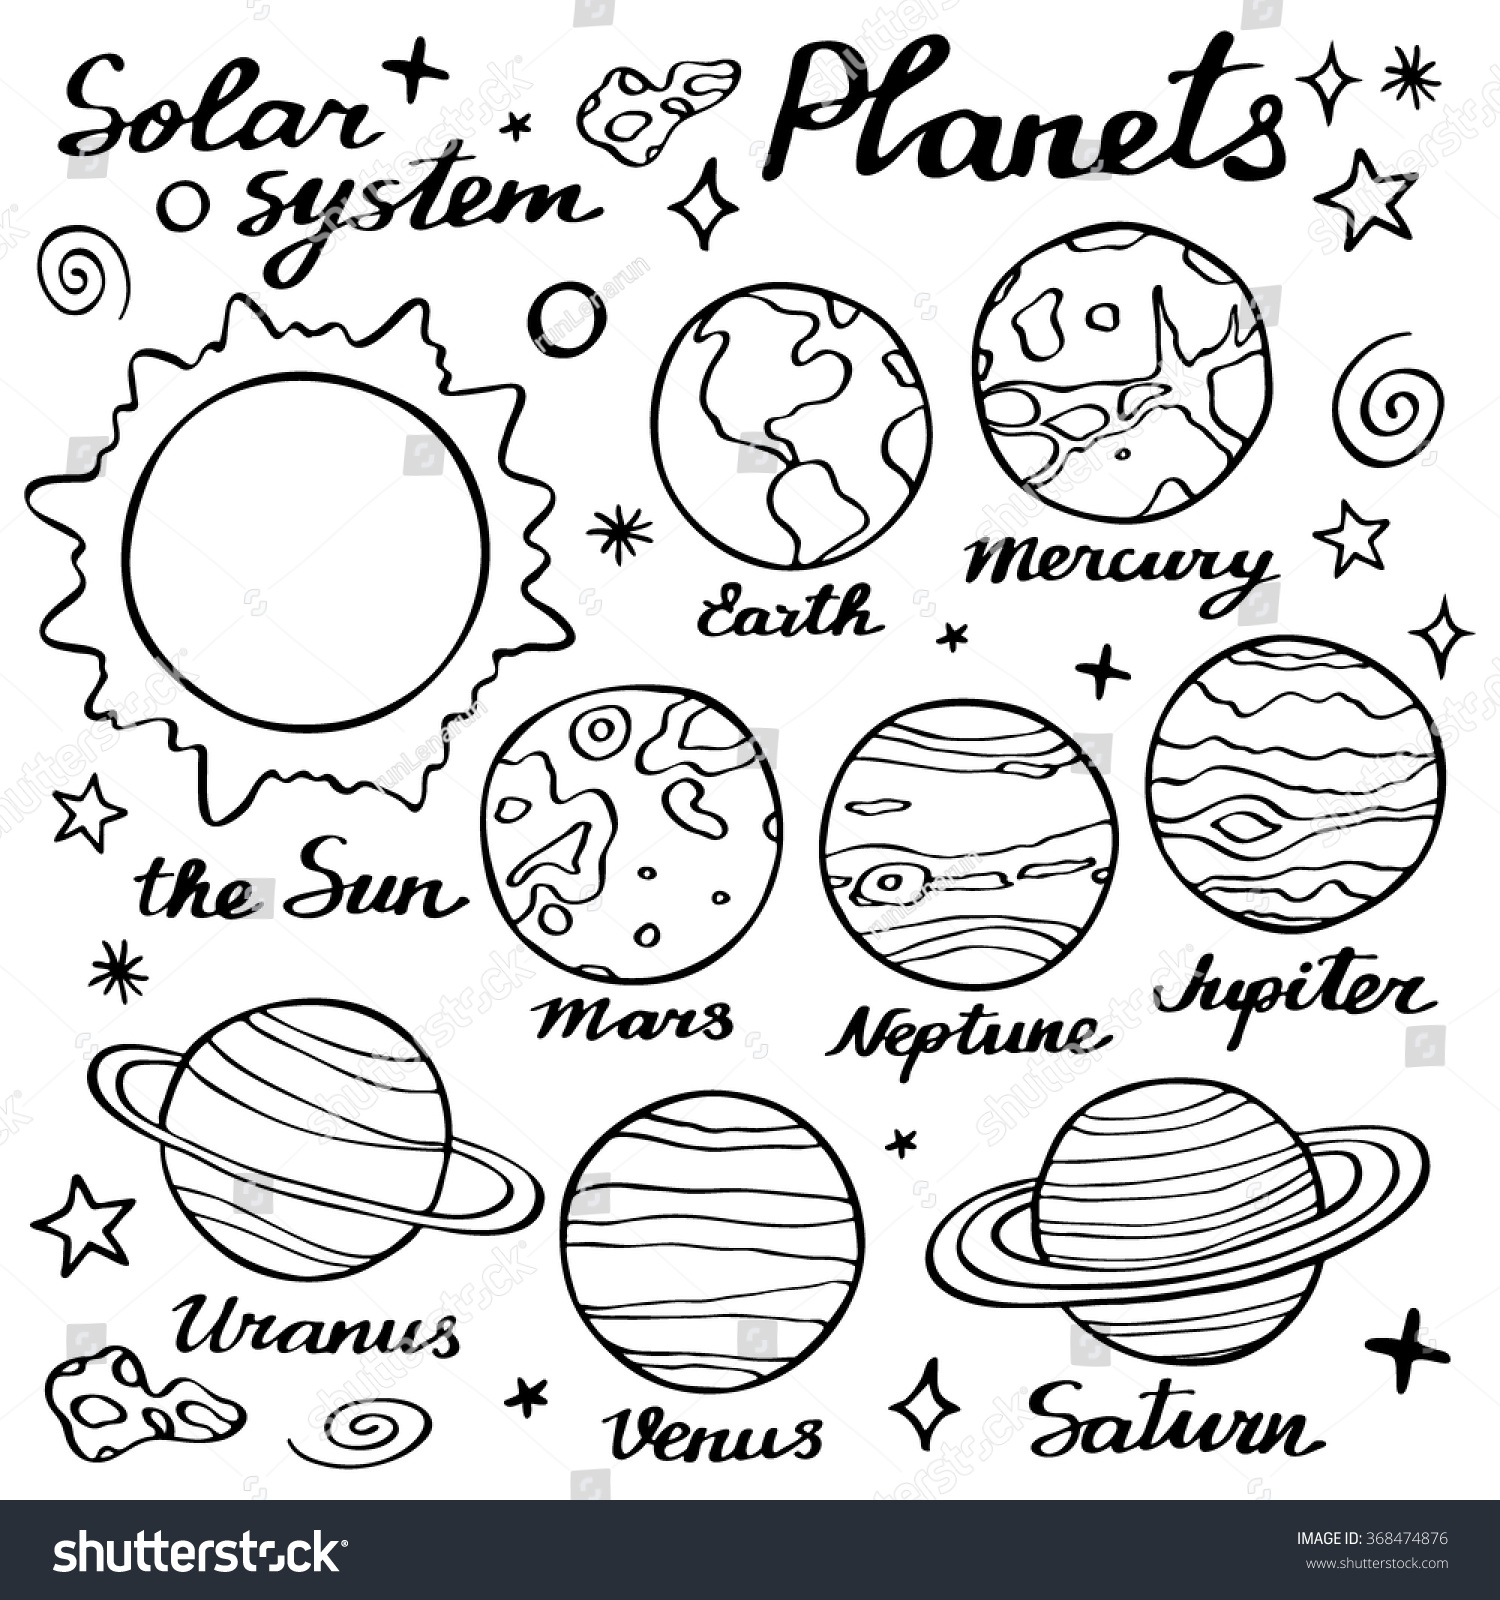 Плакат раскраска Солнечная система для детей